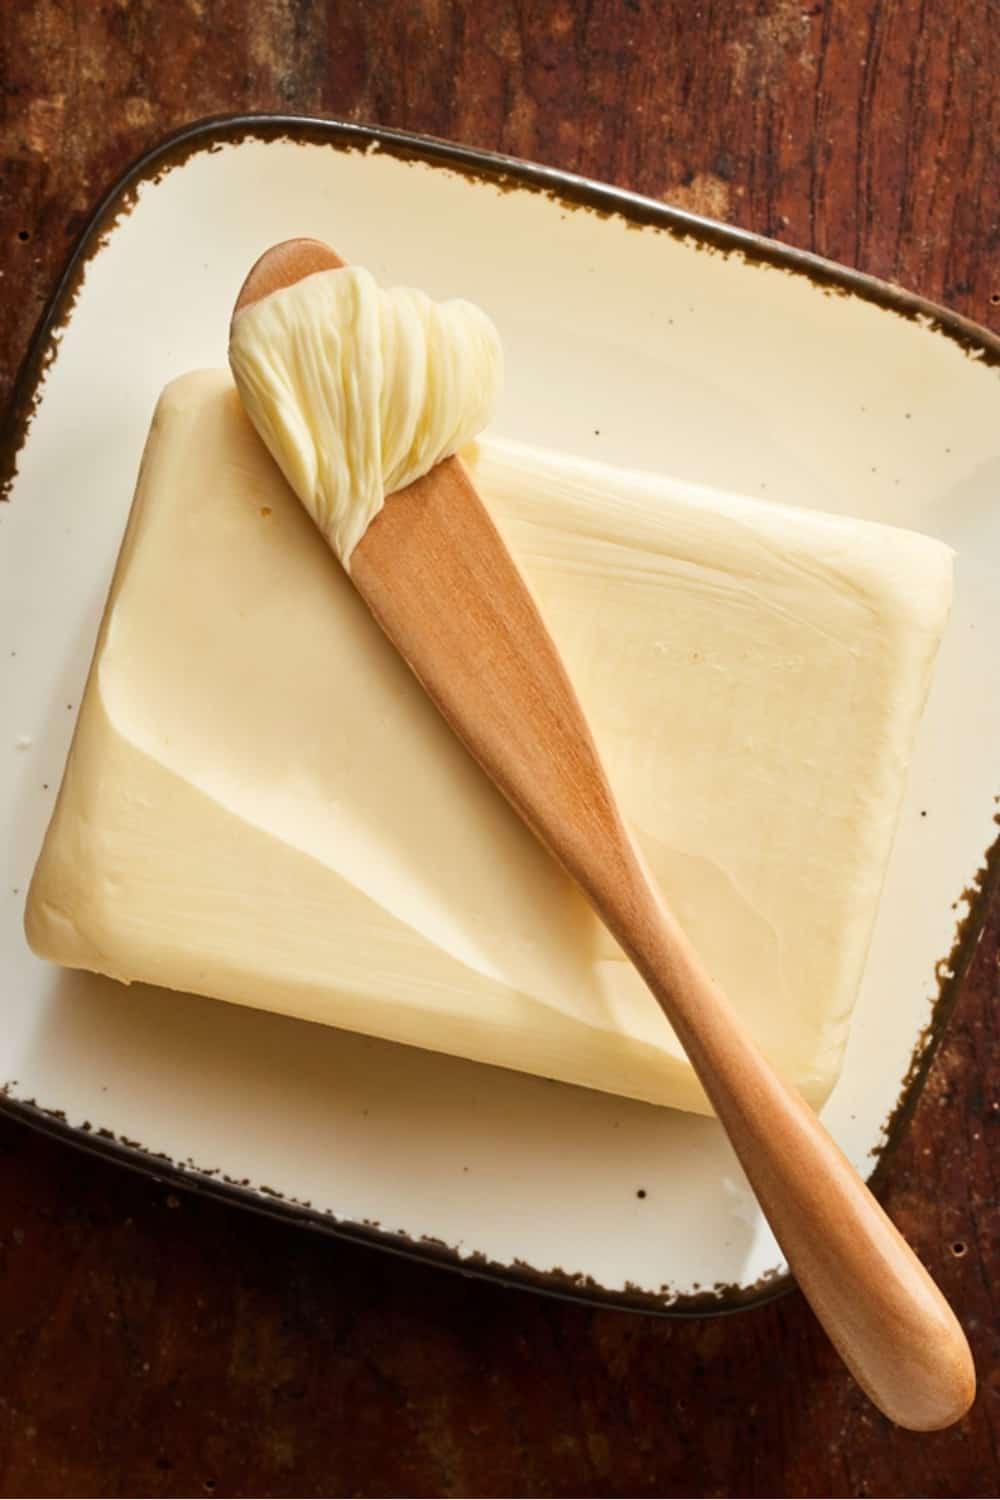 Pat de mantequilla de granja con esparcidor de madera con una cucharada de mantequilla